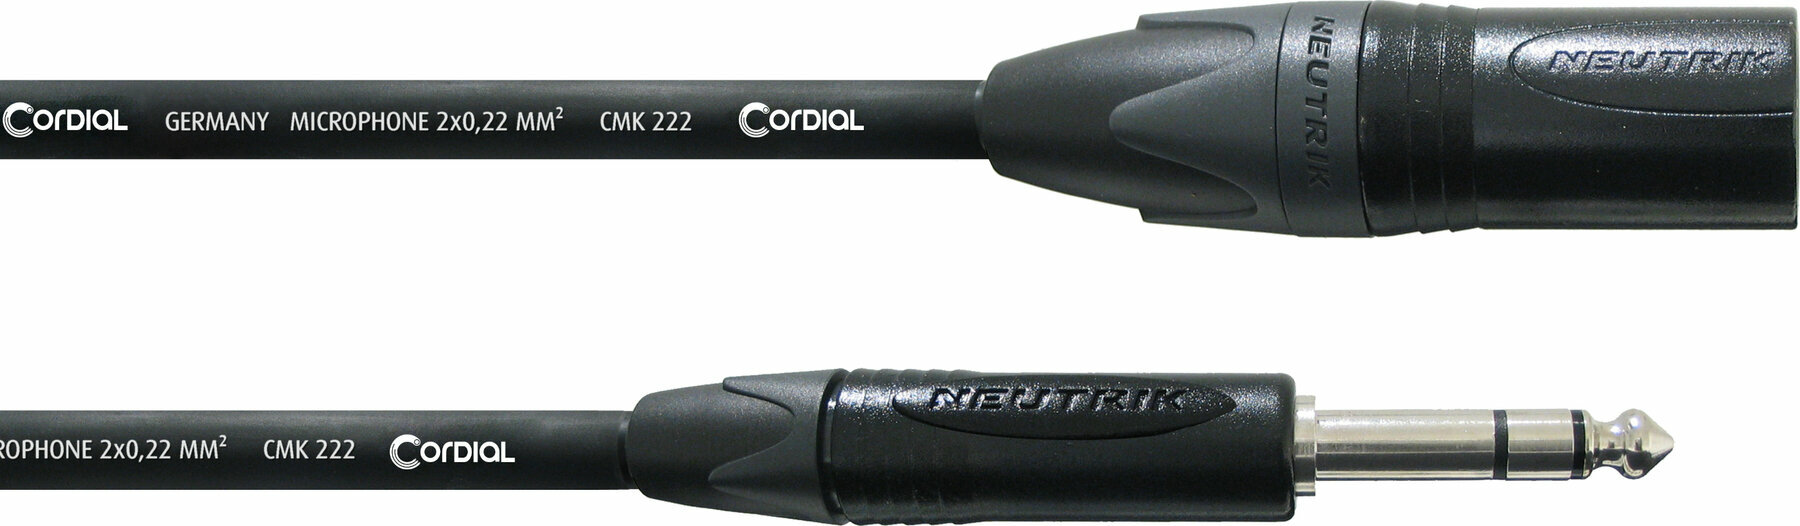 Audio kabel Cordial CPM 2,5 MV 2,5 m Audio kabel